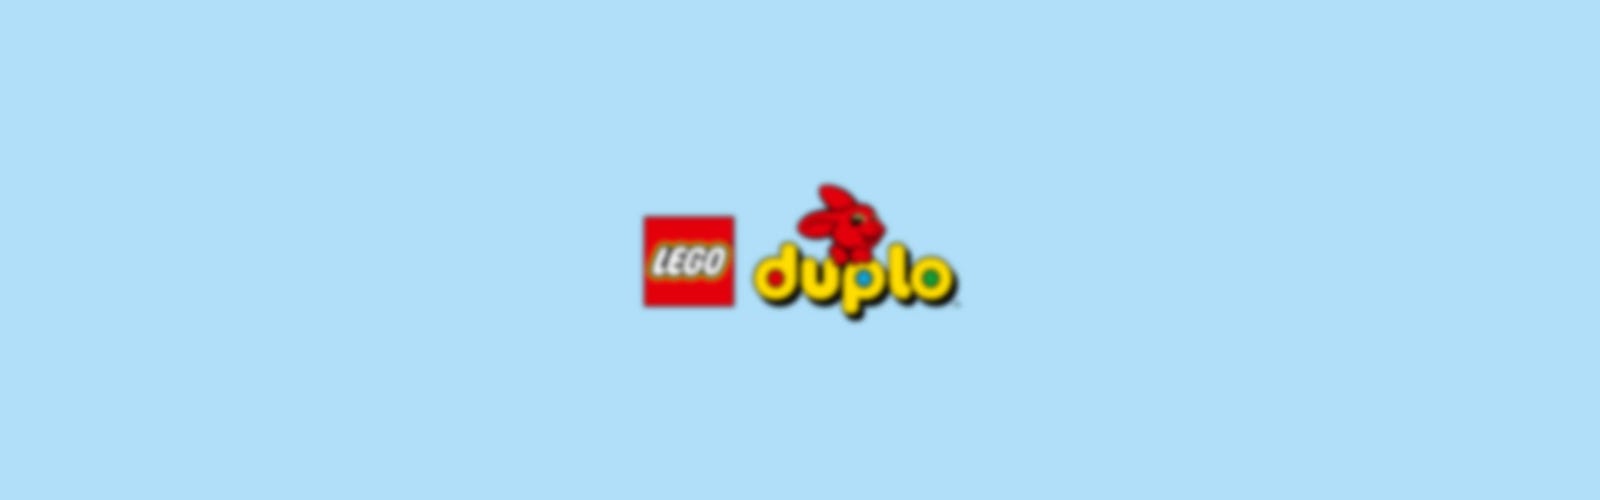 LEGO DUPLO 10913 - Caja de ladrillos clásica con caja de almacenamiento,  gran juguete educativo para niños pequeños de 18 meses y más, nuevo 2020  (65